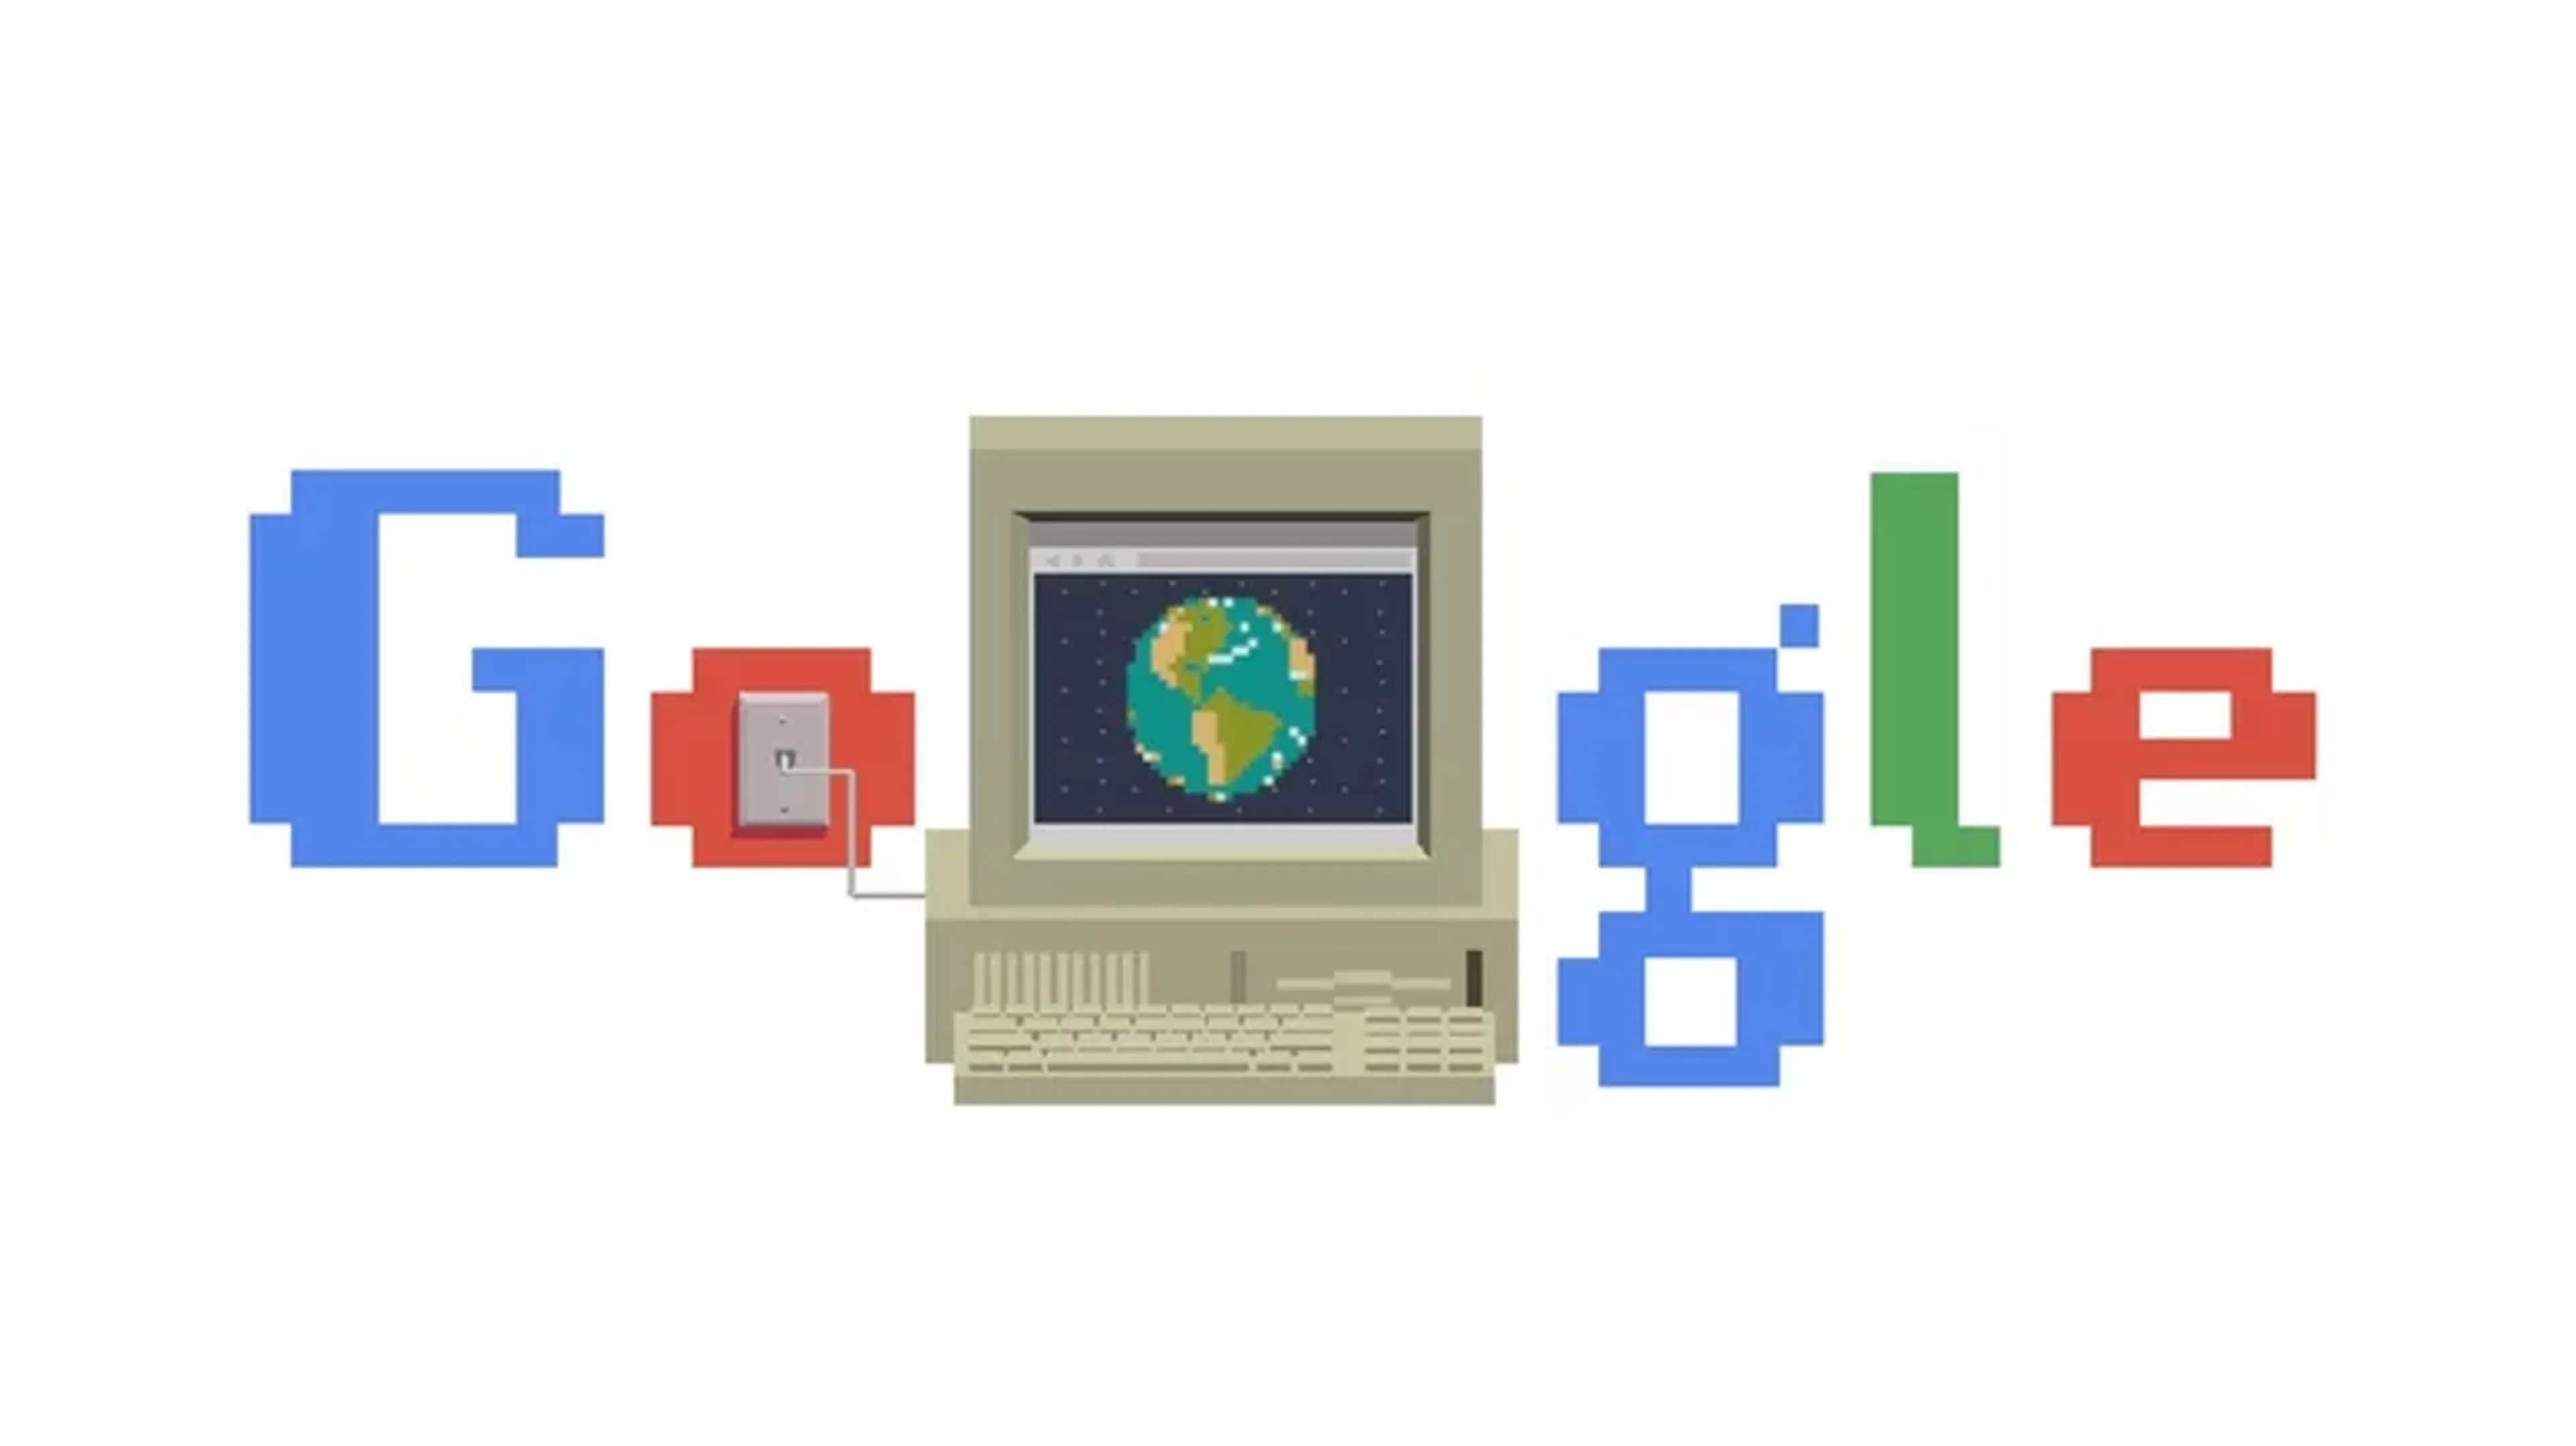 Doodle de Google